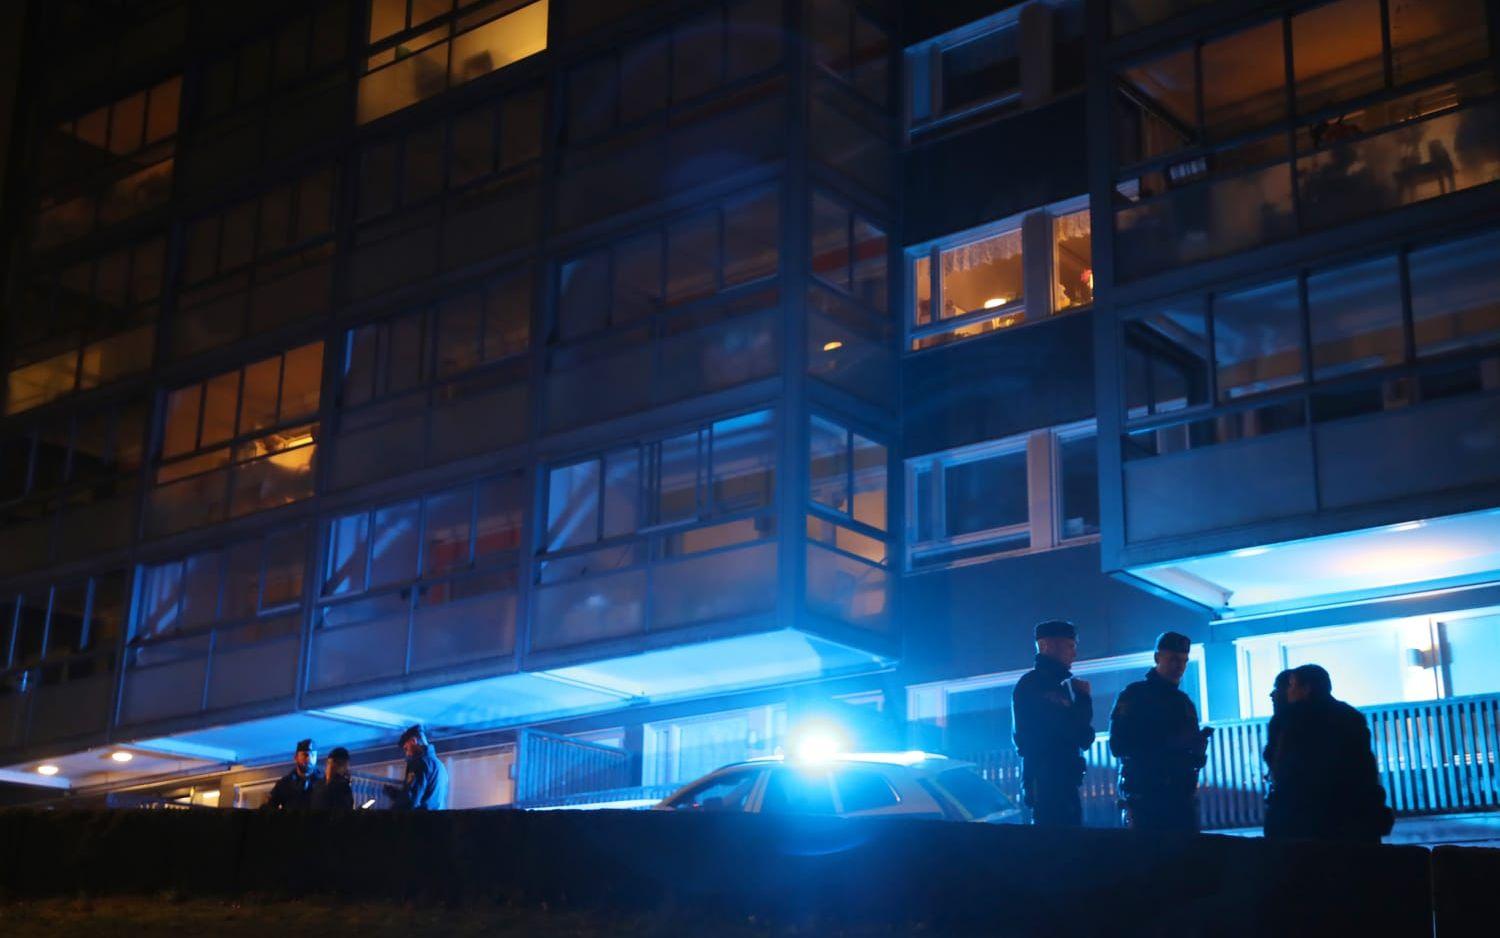 Polis, polisbilar och avspärrningar efter att en man har skjutits i Björndammen i Partille vid 21-tiden på söndagen.